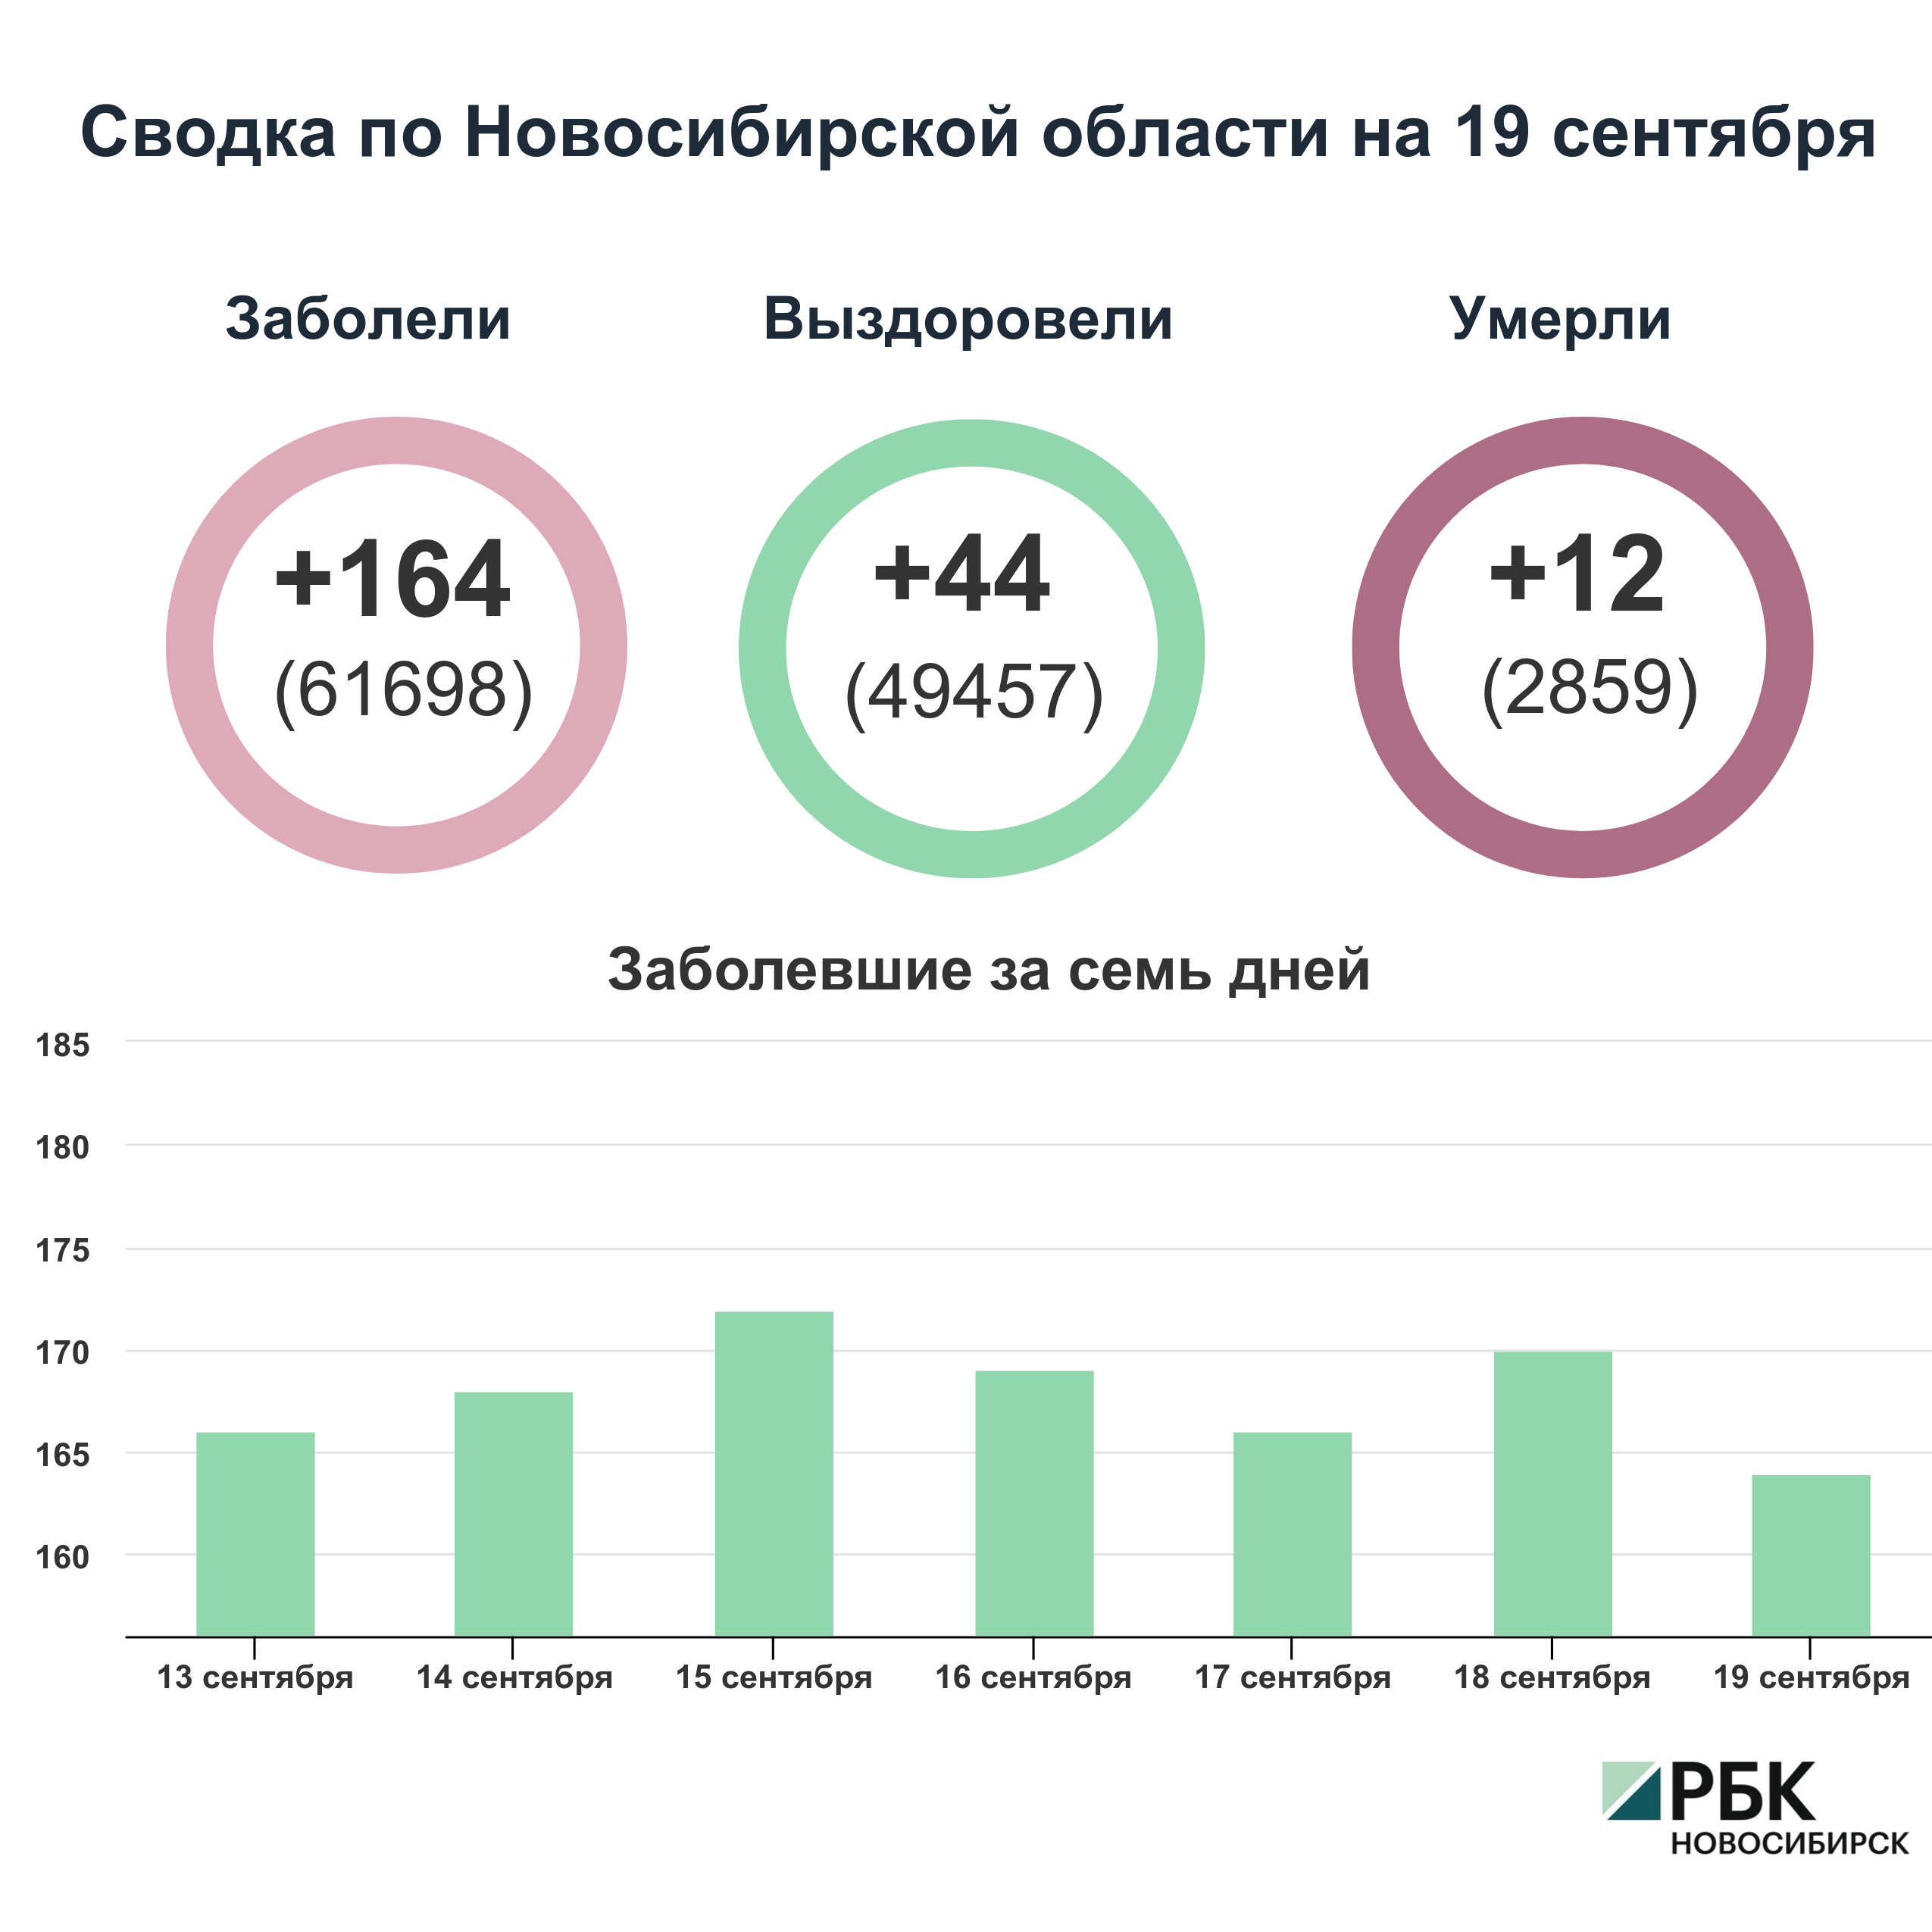 Коронавирус в Новосибирске: сводка на 19 сентября